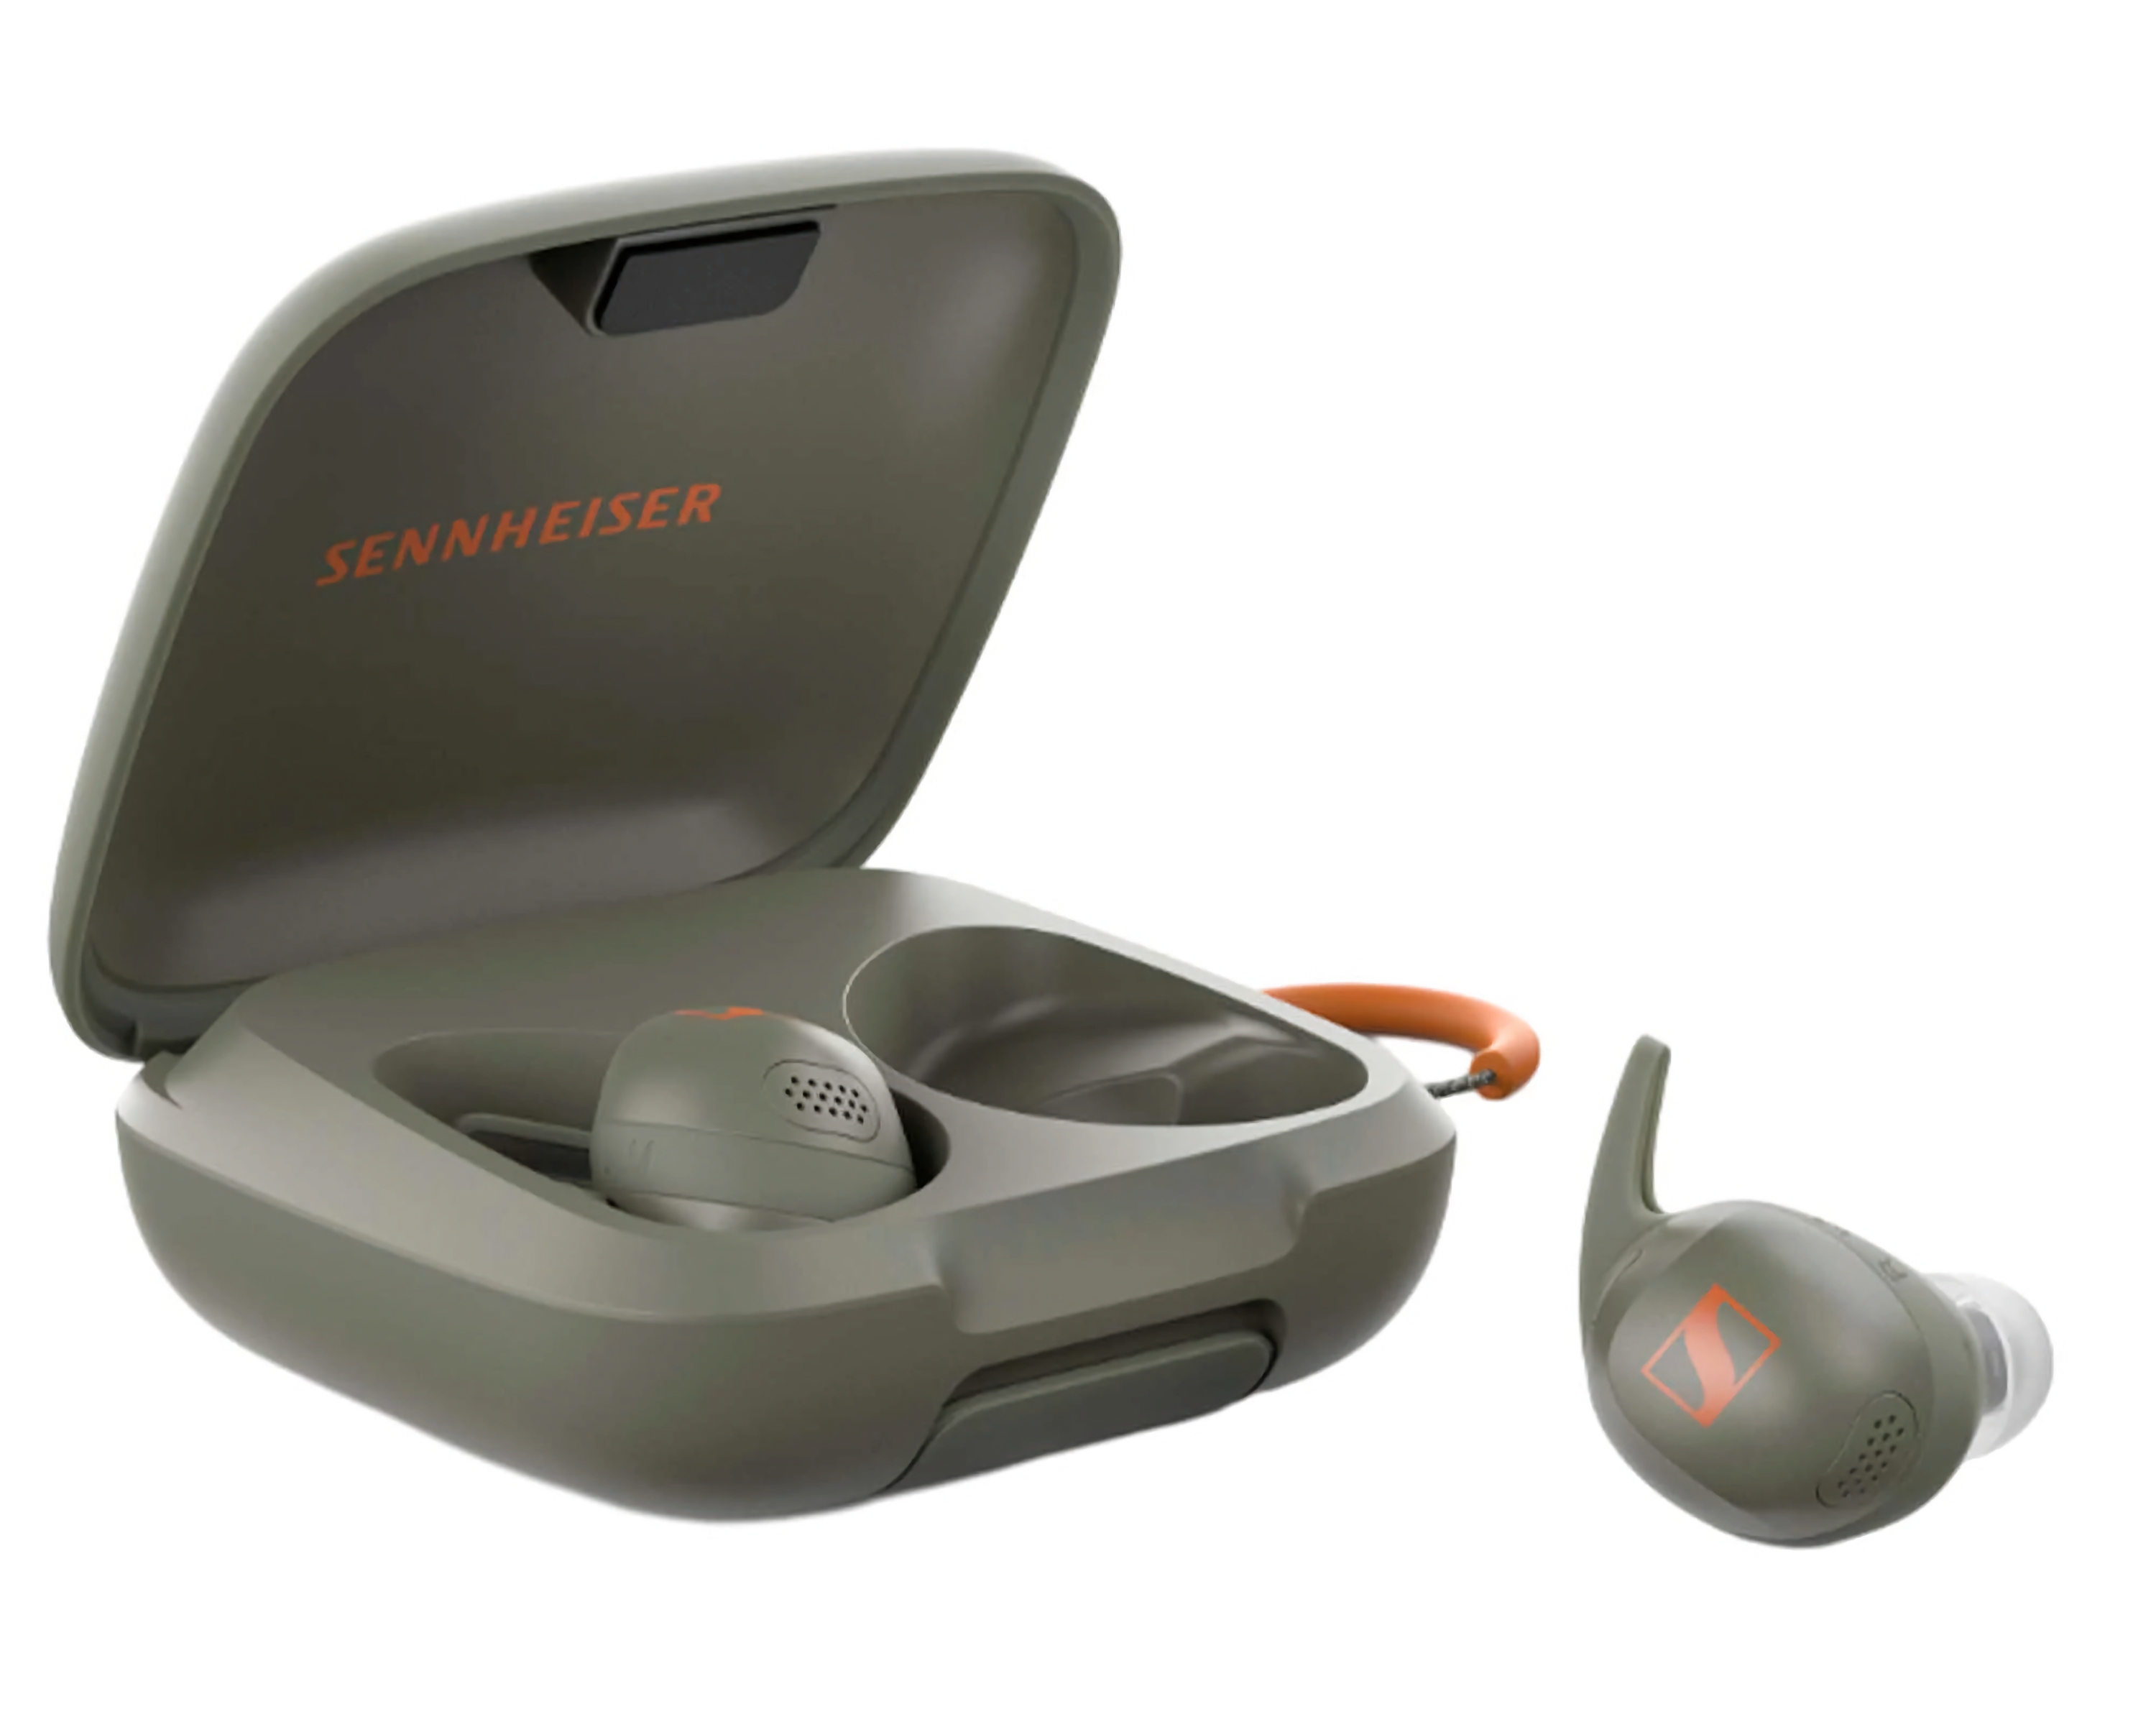 Sennheiser Momentum Sport із функцією вимірювання температури тіла і пульсу надійшли в продаж